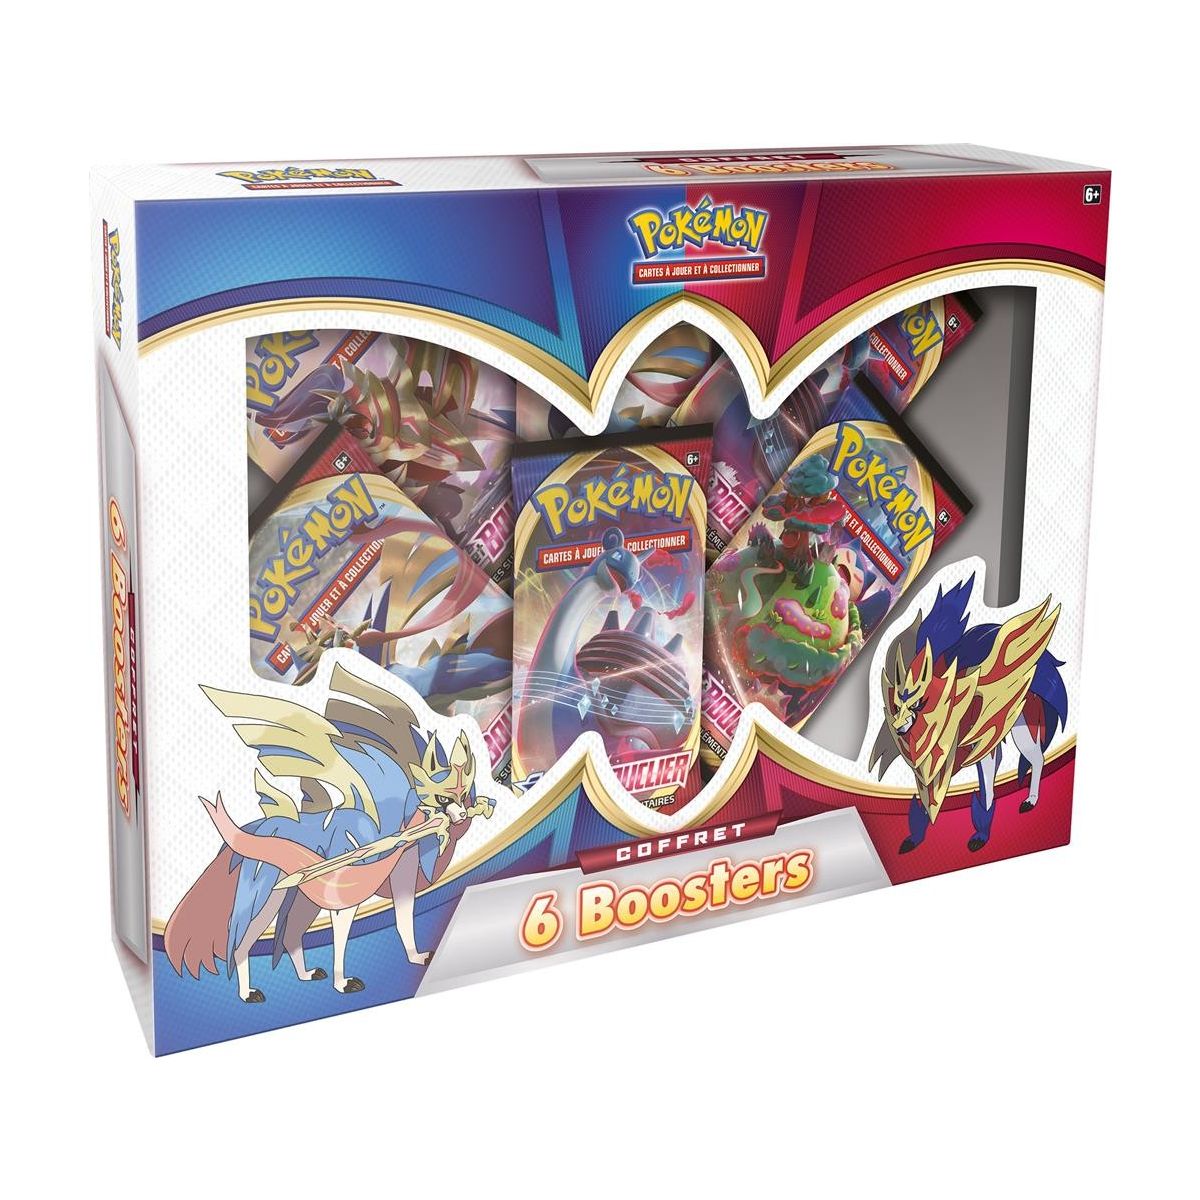 Pokémon - Box - 6 Boosters [EB01] - 2021